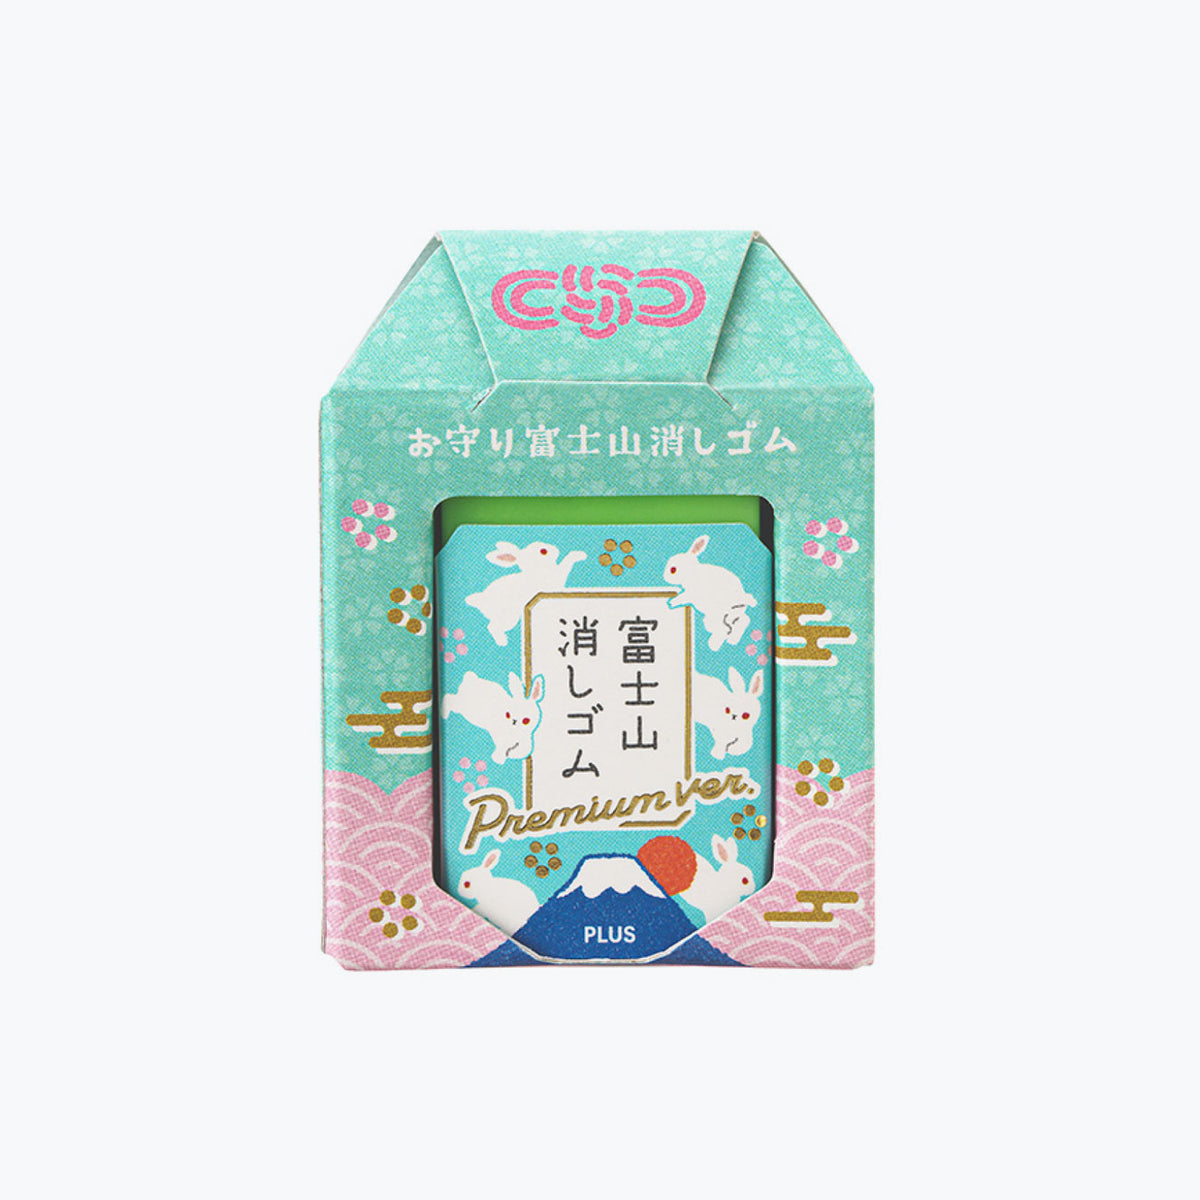 Plus - Eraser - Air-In - Mt. Fuji - Amulet - Rabbit